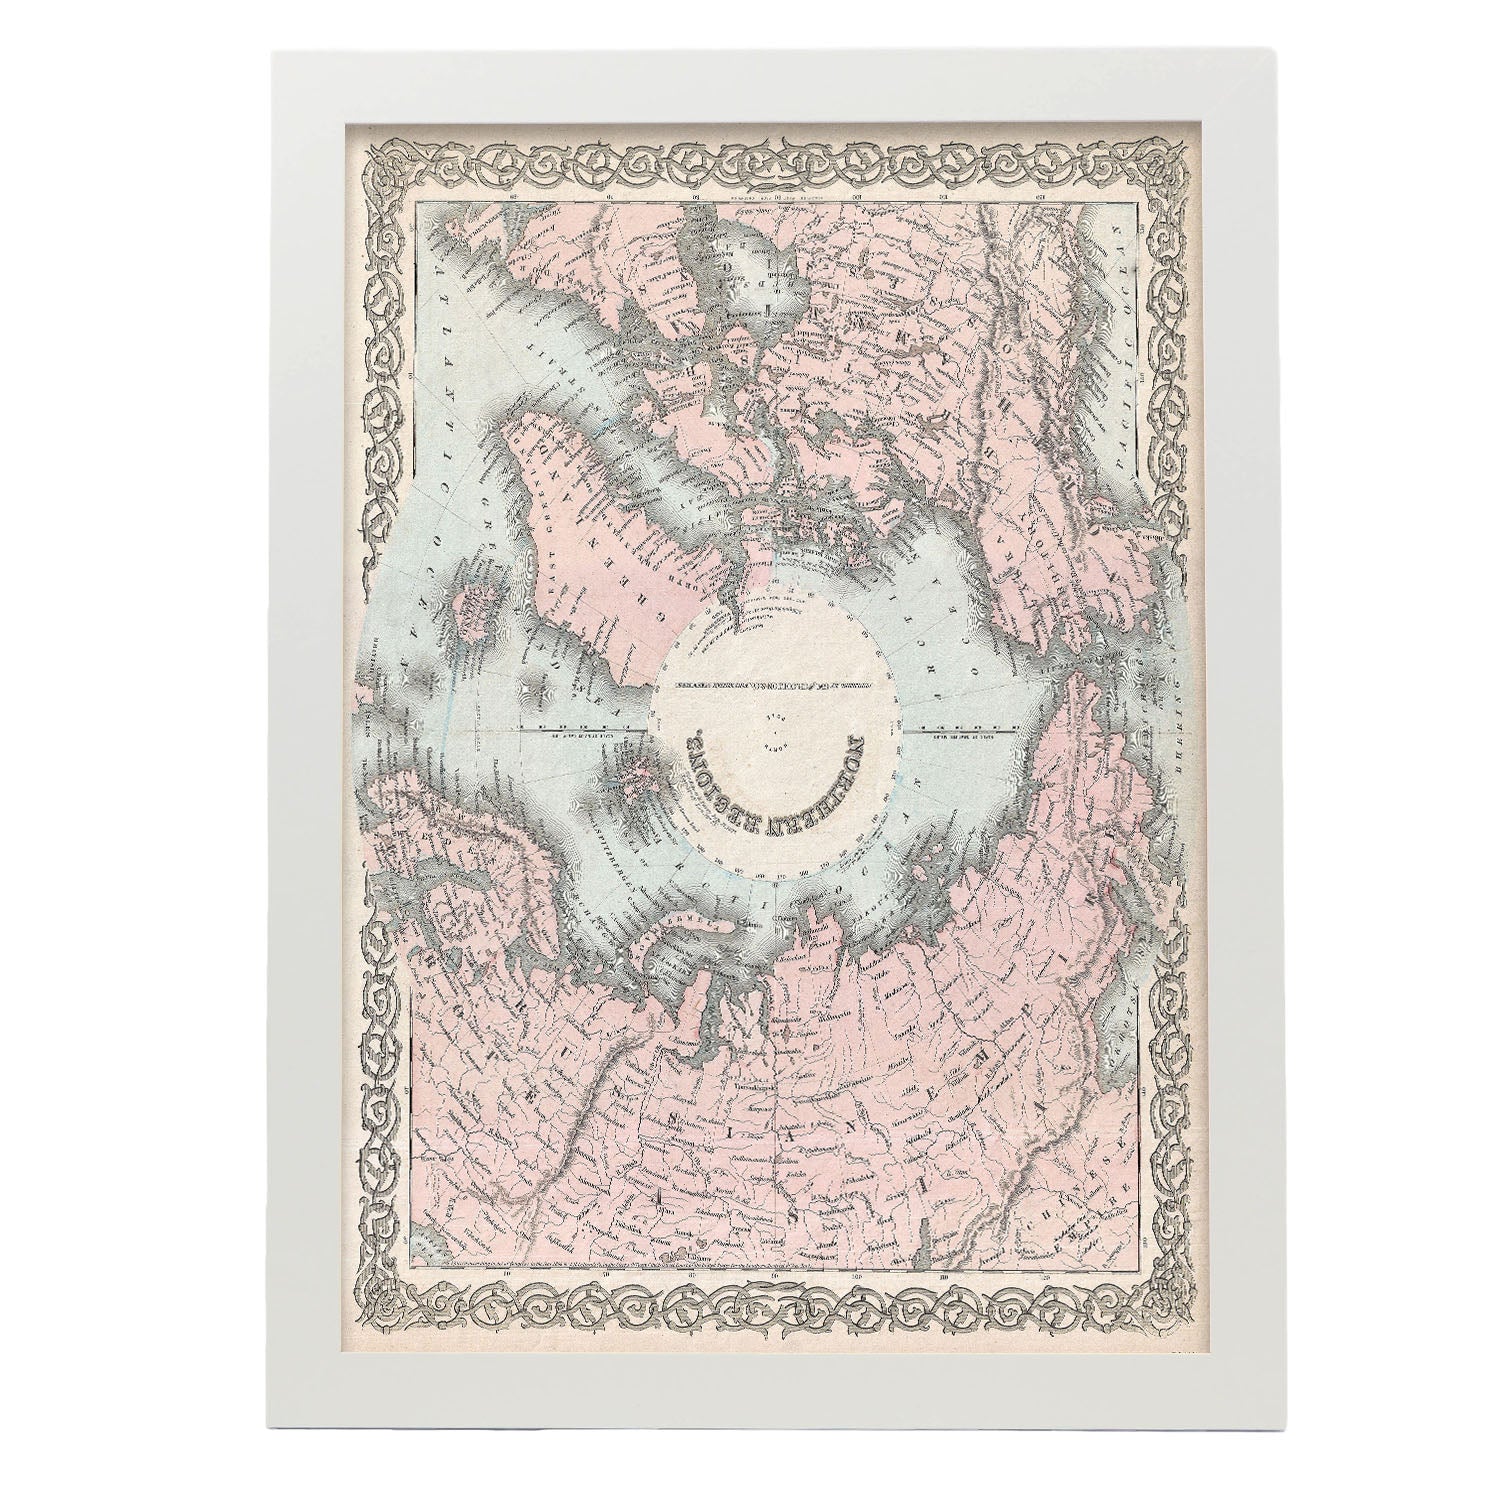 1872_Colton_Map_of_the_North_Pole_or_Arctic_-1855-Artwork-Nacnic-A3-Marco Blanco-Nacnic Estudio SL